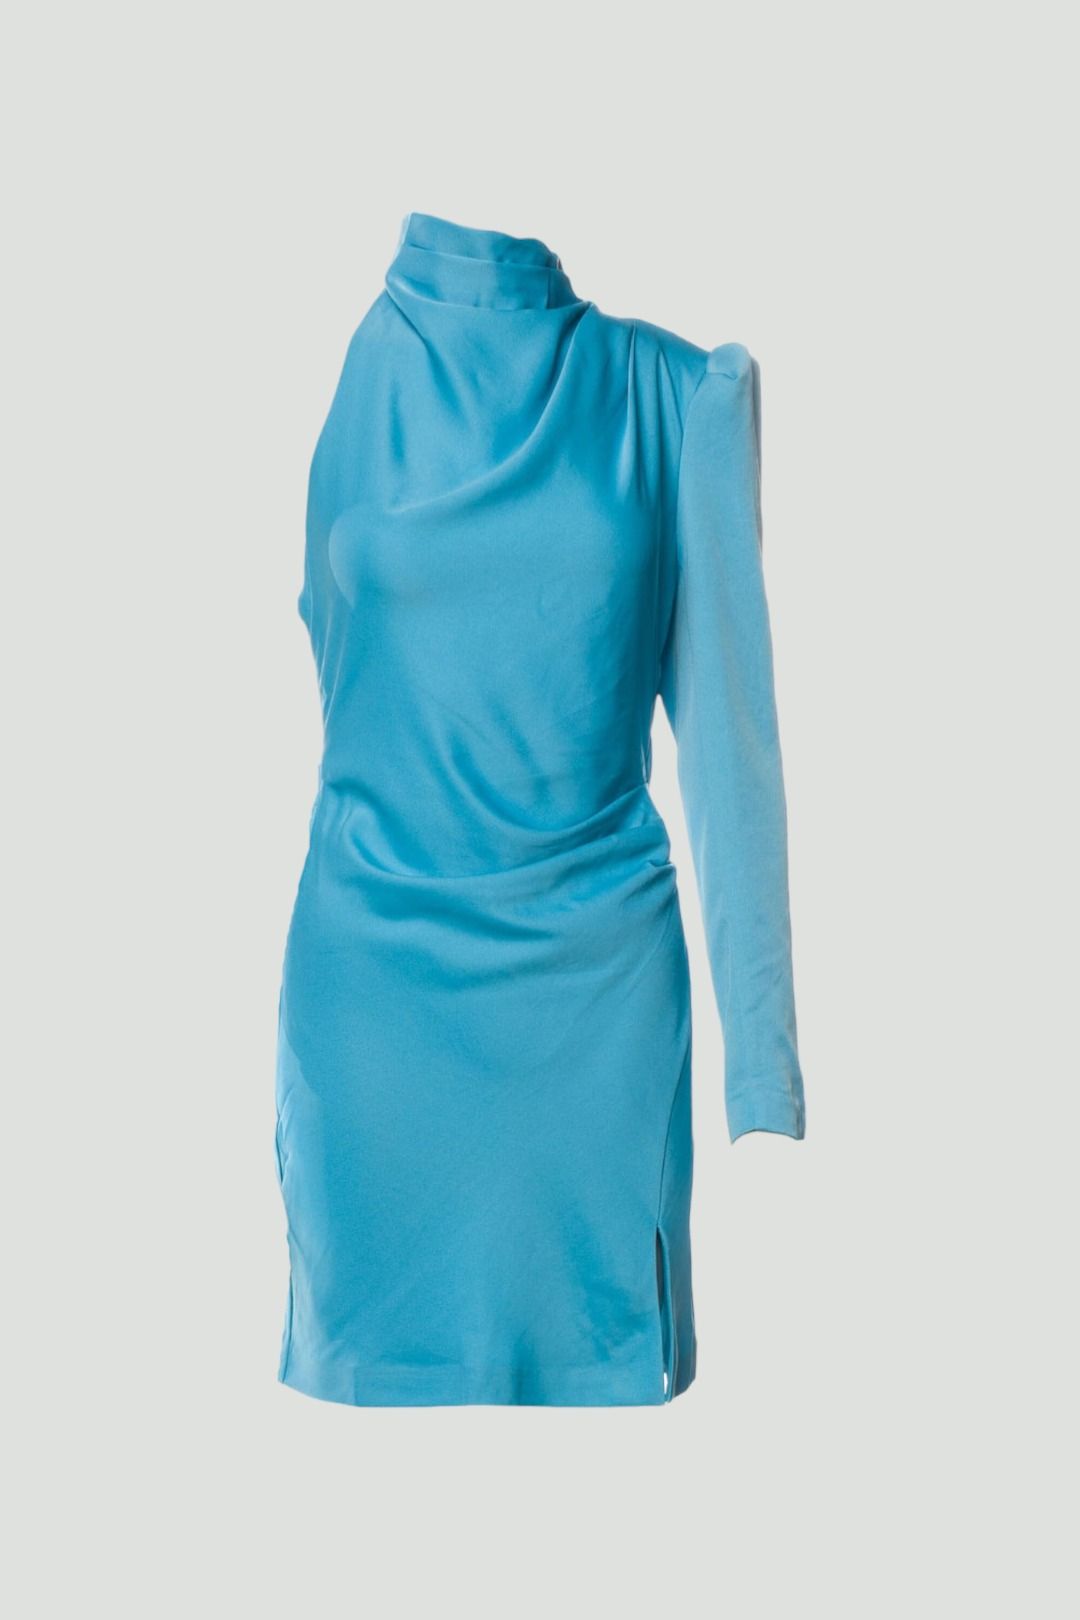 Misha Romeo Satin Mini Dress in Blue